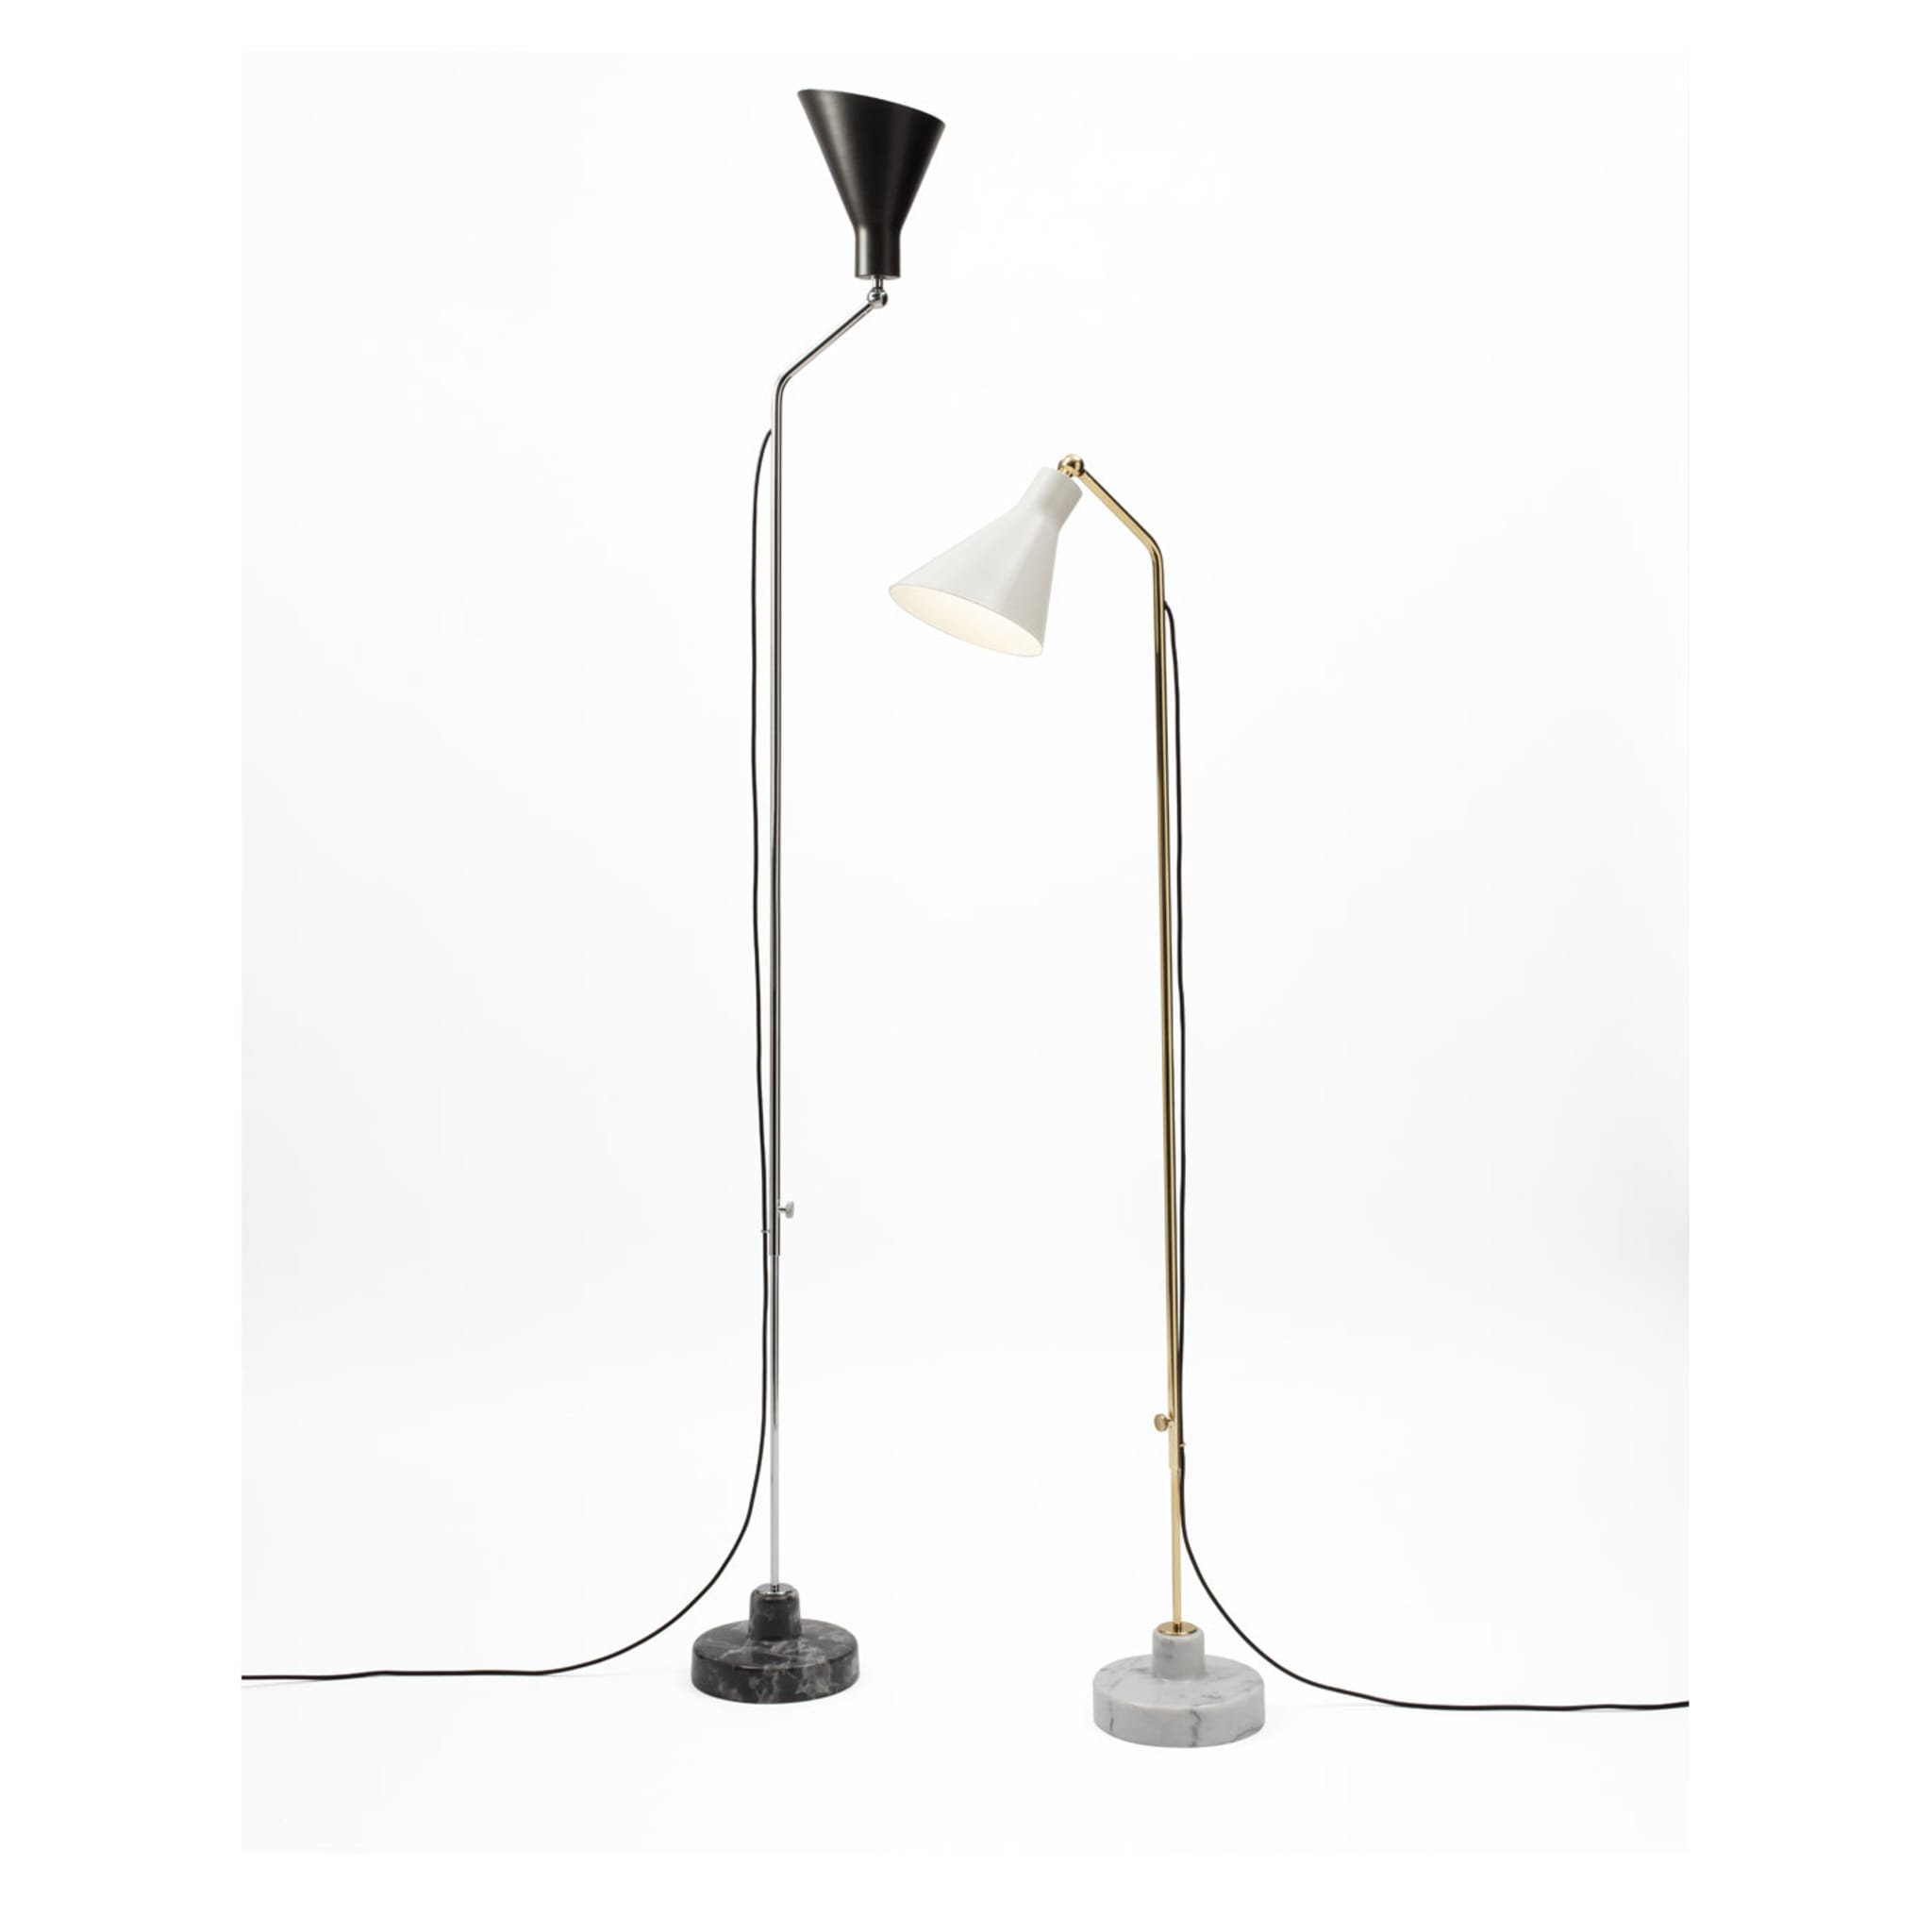 Alzabile Verstellbare lampe by Ignazio Gardella - Alternative Ansicht 2